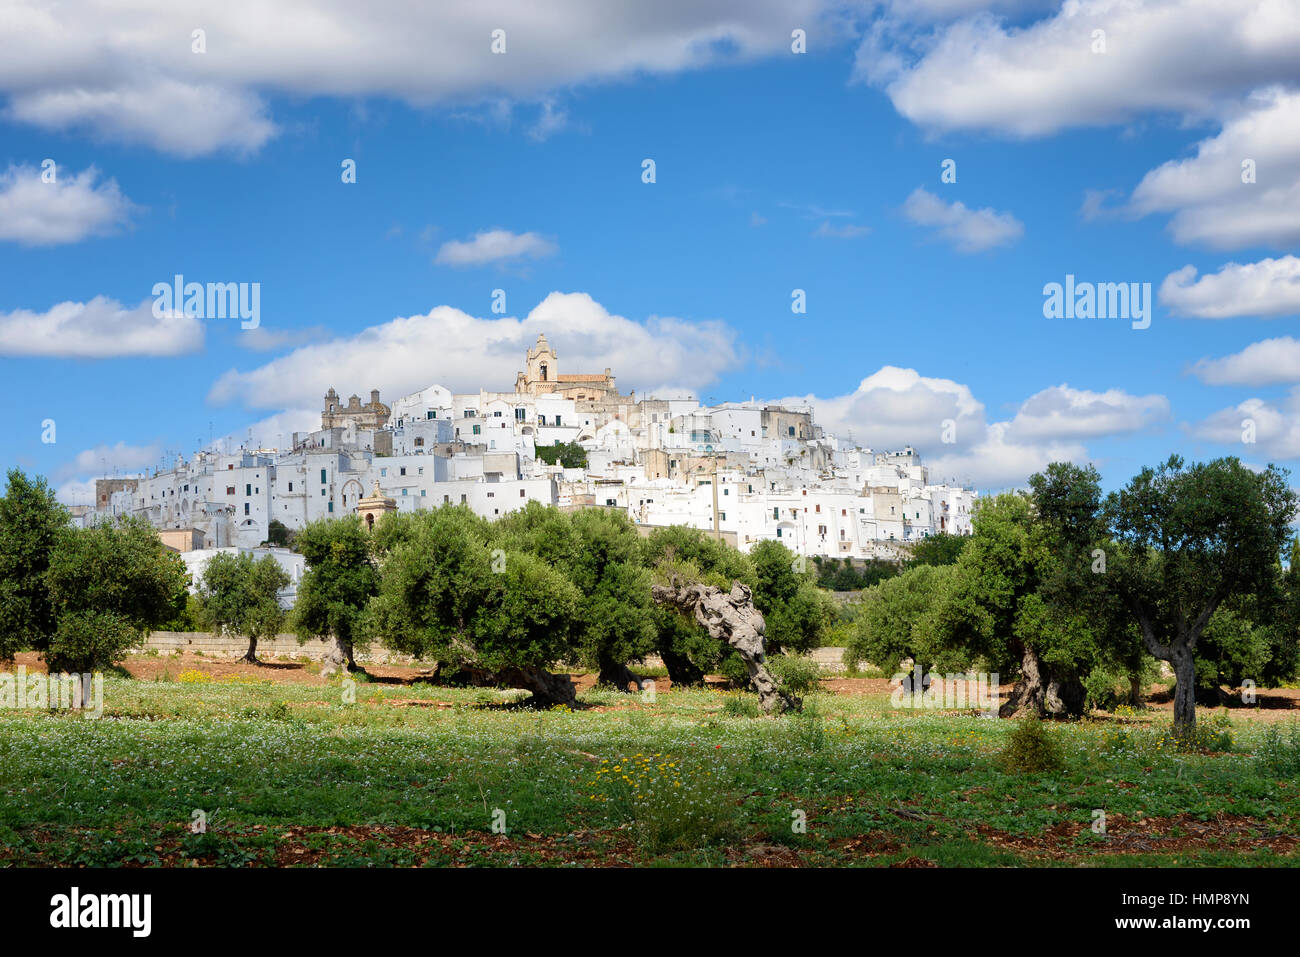 Paysage dans les Pouilles, en Italie, avec la ville blanche (citta bianca Ostuni) sur une colline au-dessus d'un olivier verger sous un ciel nuageux. Banque D'Images